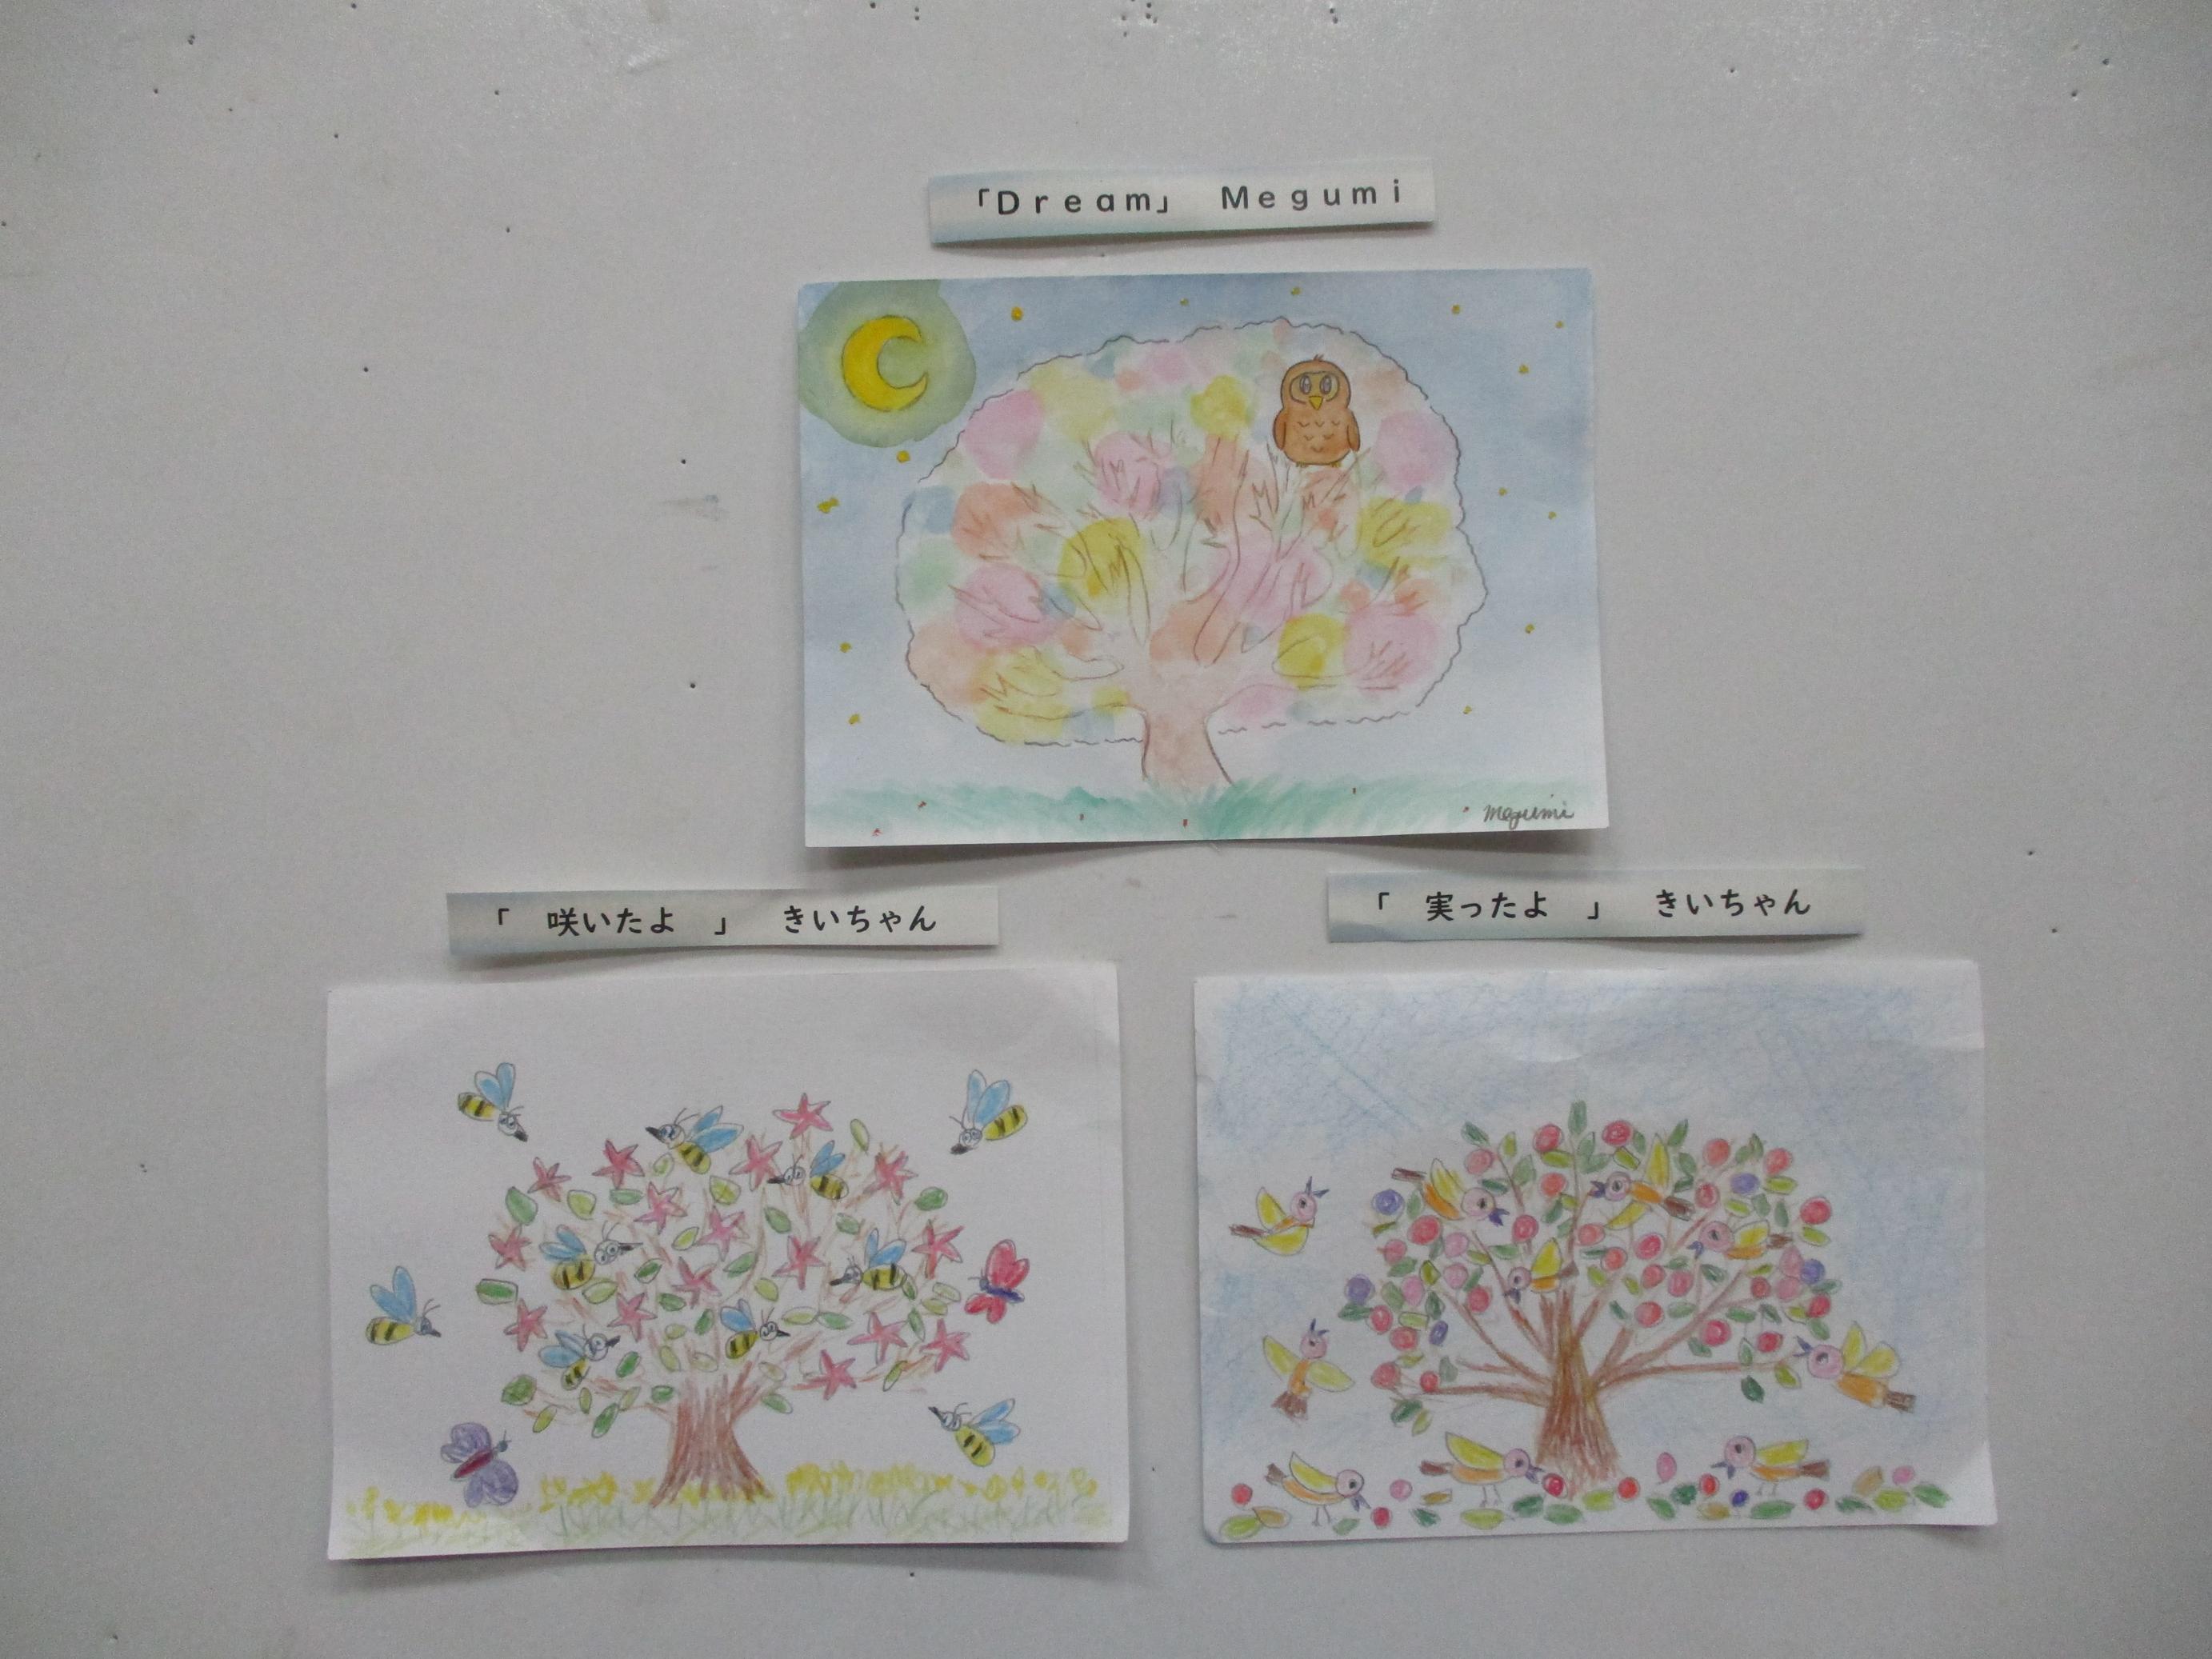 「Dream／Megumi様」「咲いたよ／きいちゃん様」「実ったよ／きいちゃん様」にじいろアート作品の写真